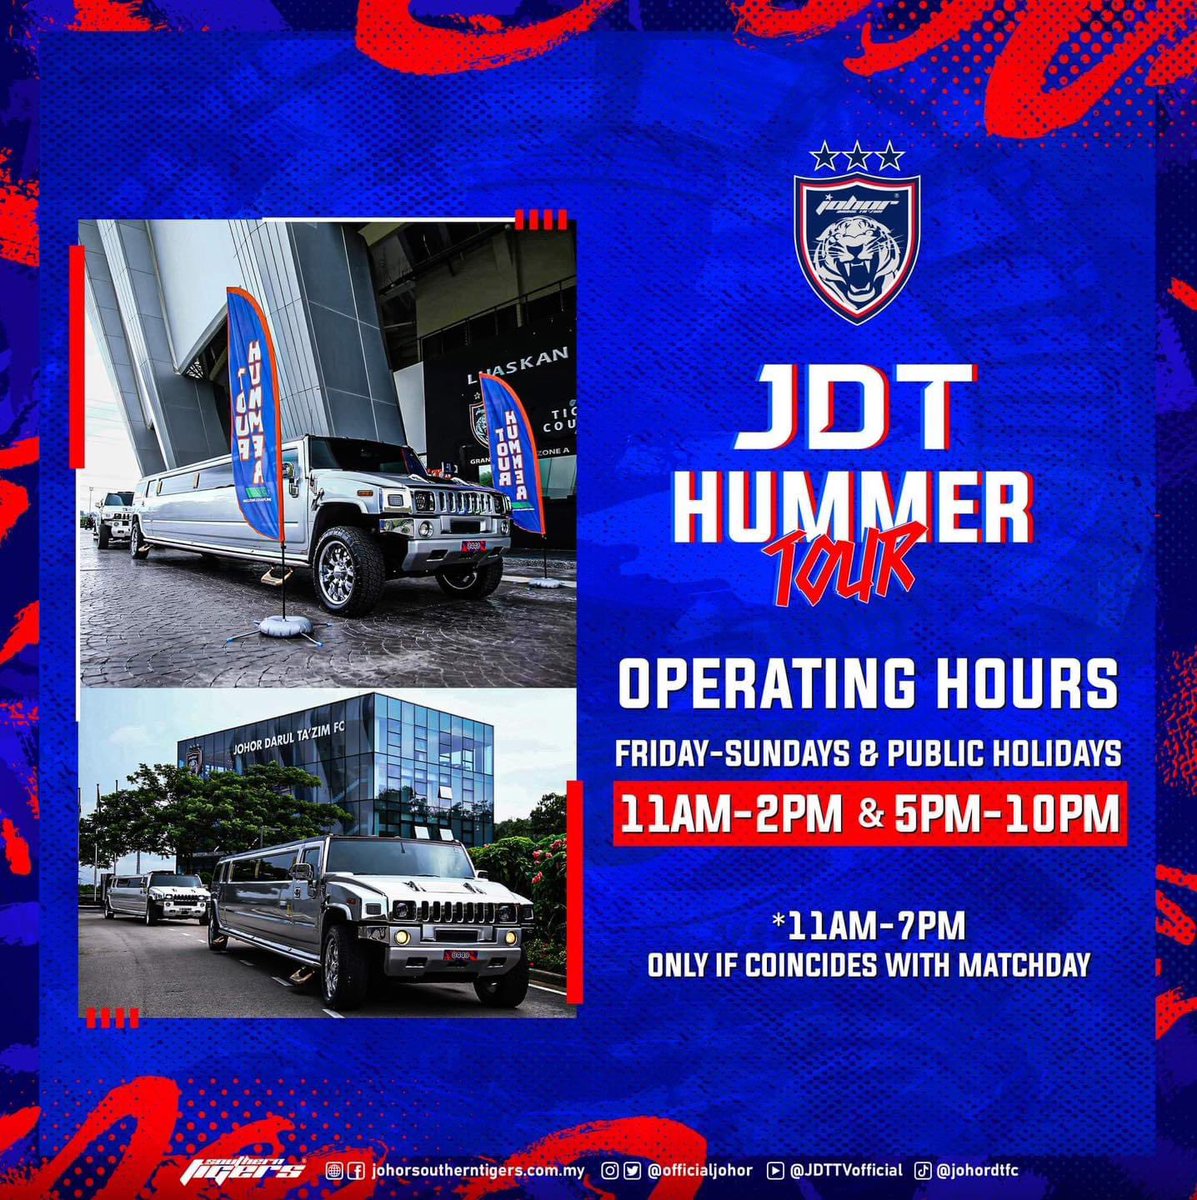 JDT HUMMER TOUR OPERATING HOURS

Hidup Johor Demi Johor
#WhatCanYouDo
#HarimauSelatan
#SouthernTigers
#PermataSelatan
#JewelOfTheSouth
#JDTuntukSemua
#JDTforAll